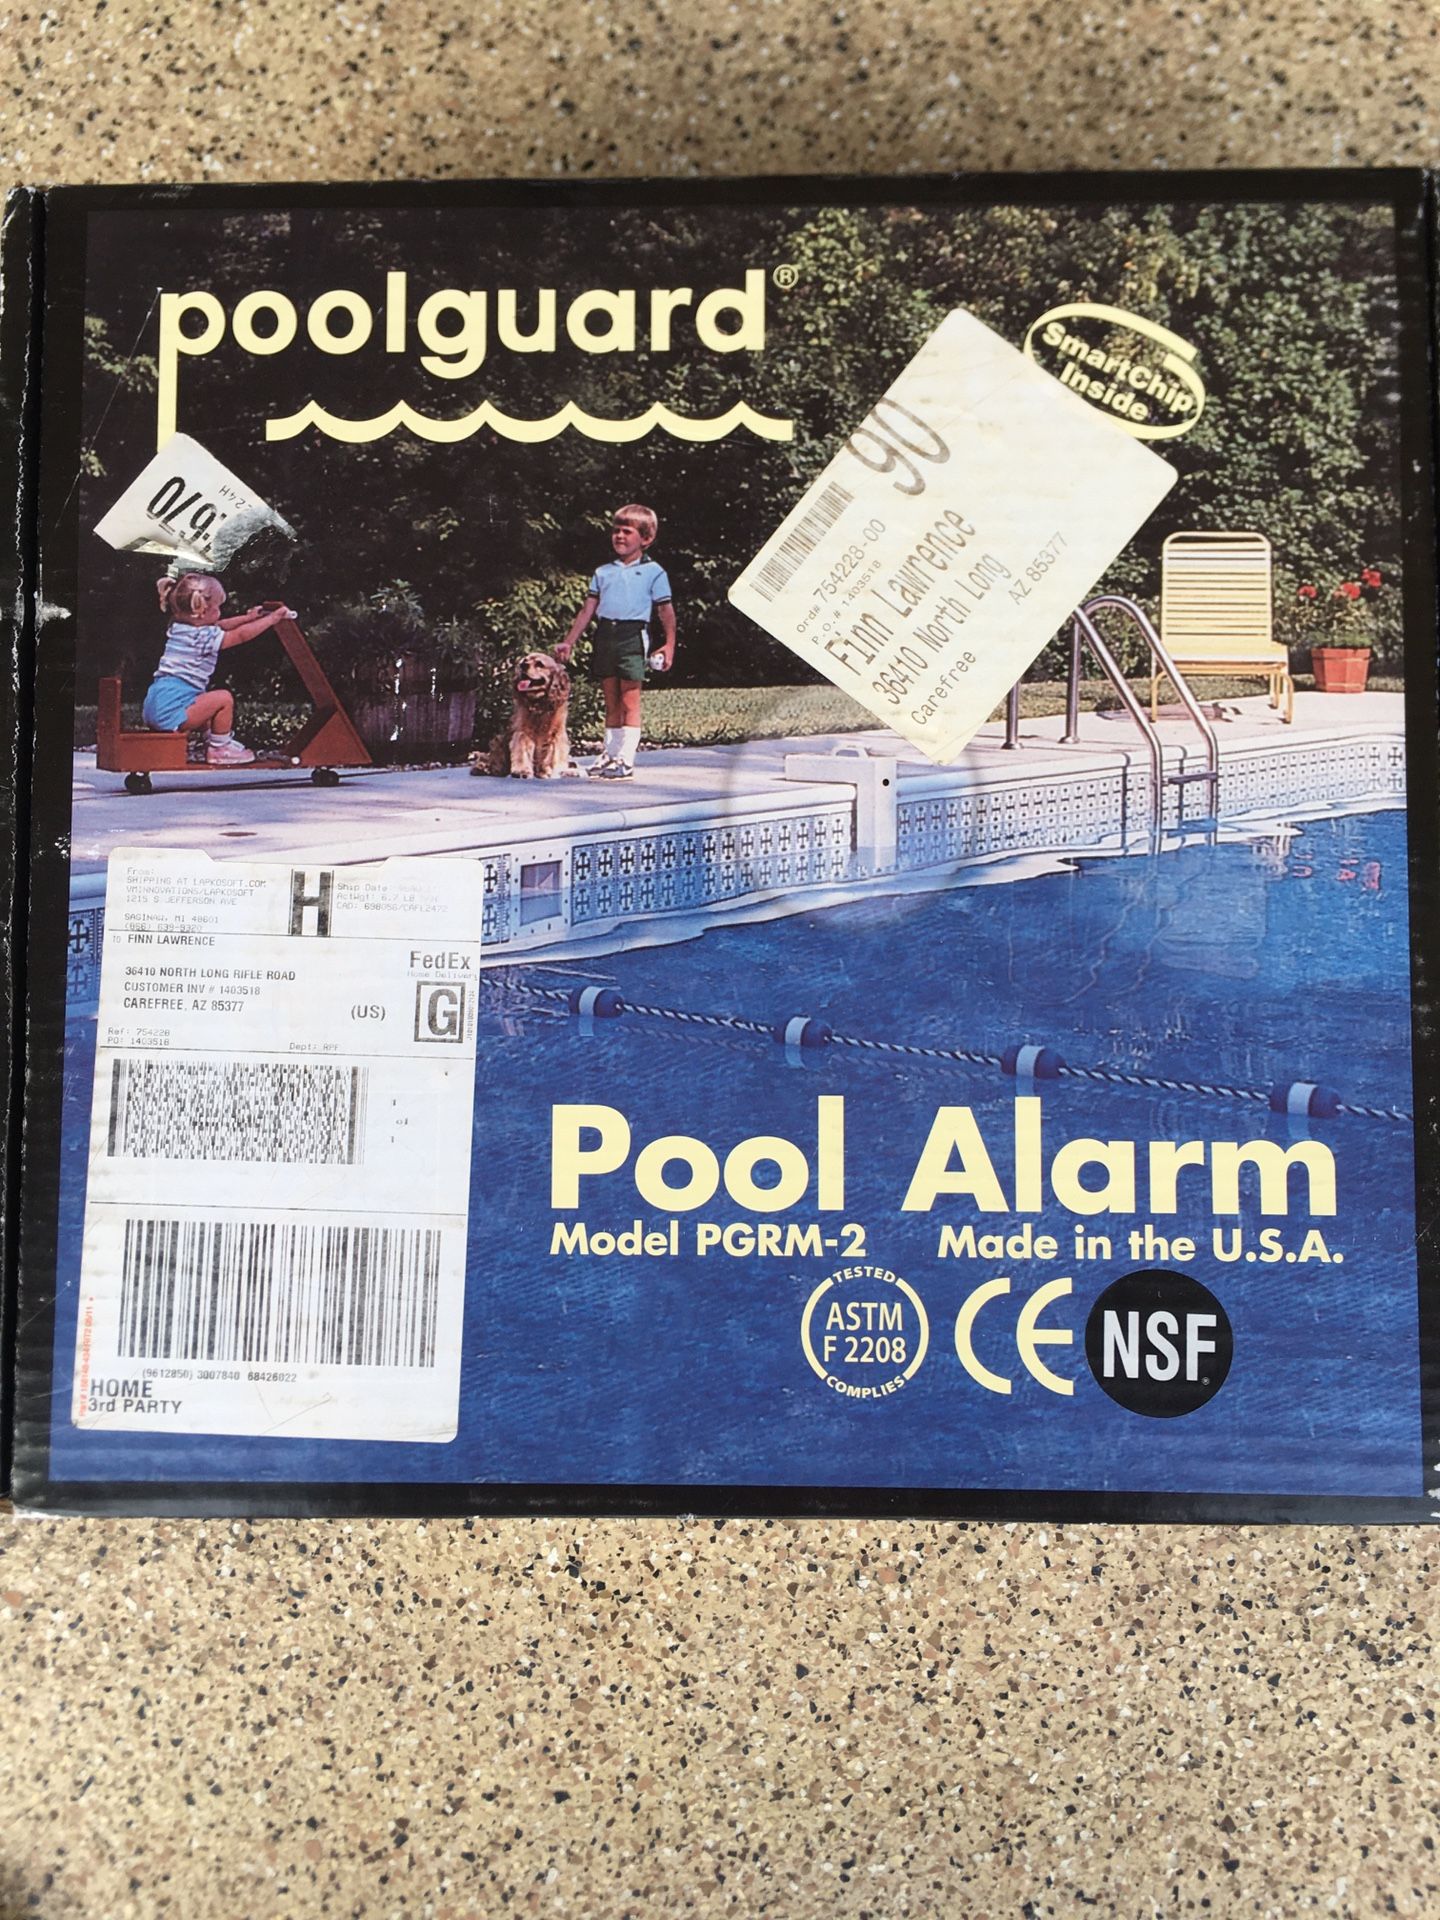 Poolguard PGRM-2 Pool Alarm